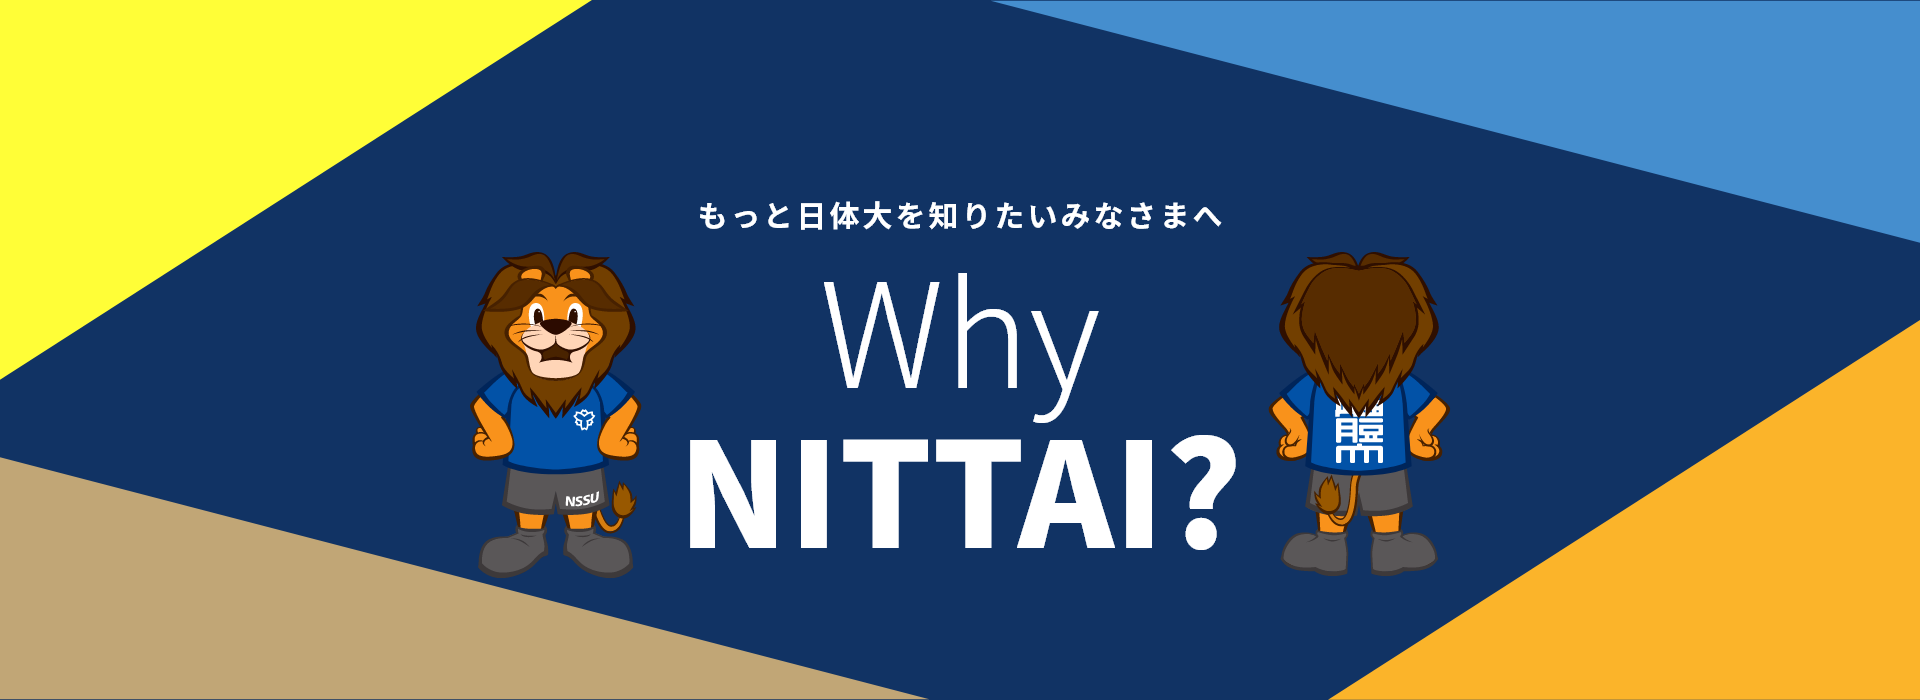 Why NITTAI